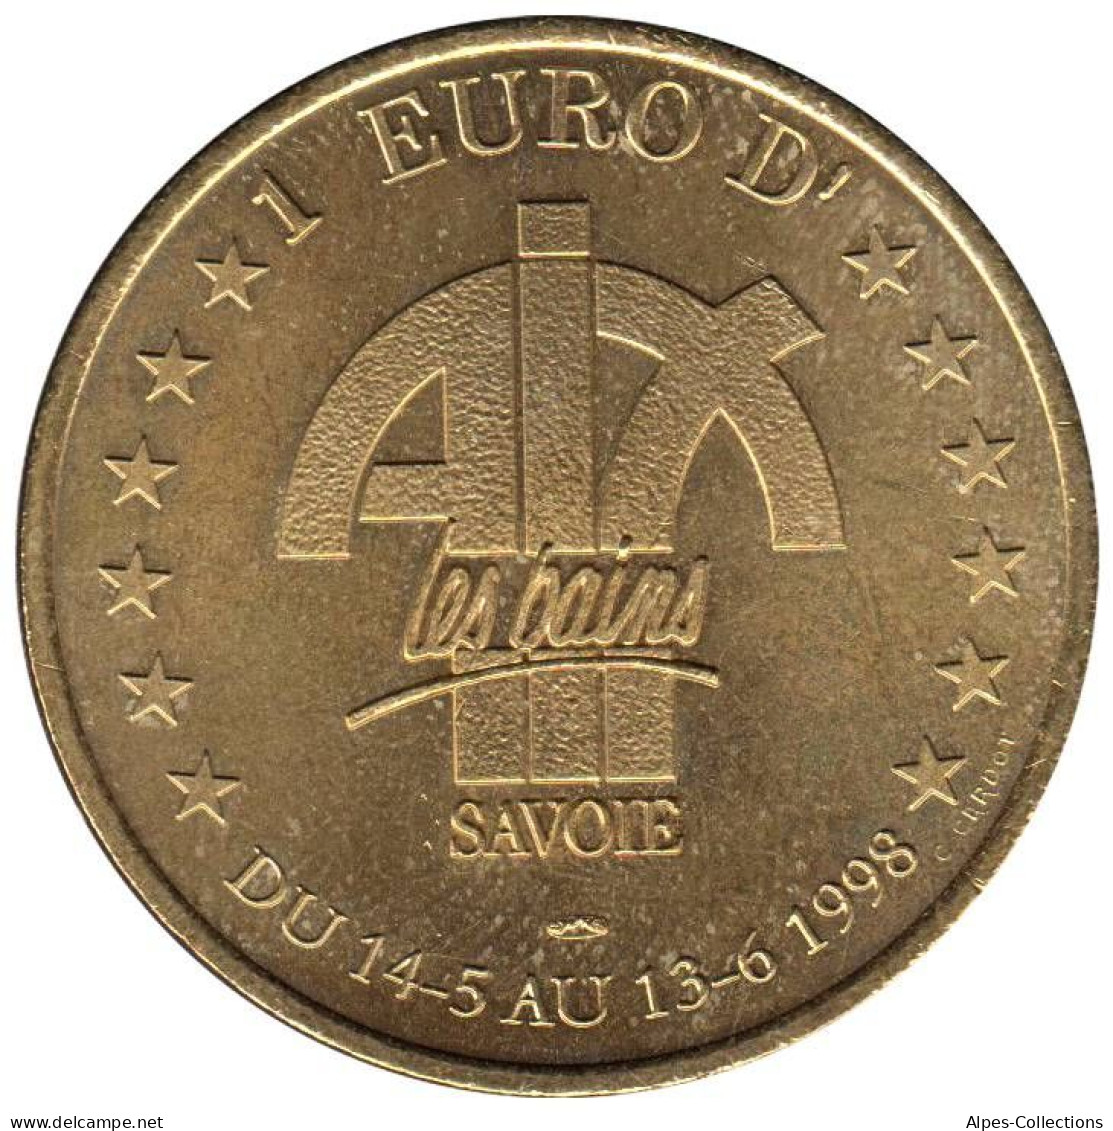 AIX LES BAINS - EU0010.2 - 1 EURO DES VILLES - Réf: T418 - 1998 - Euros Des Villes